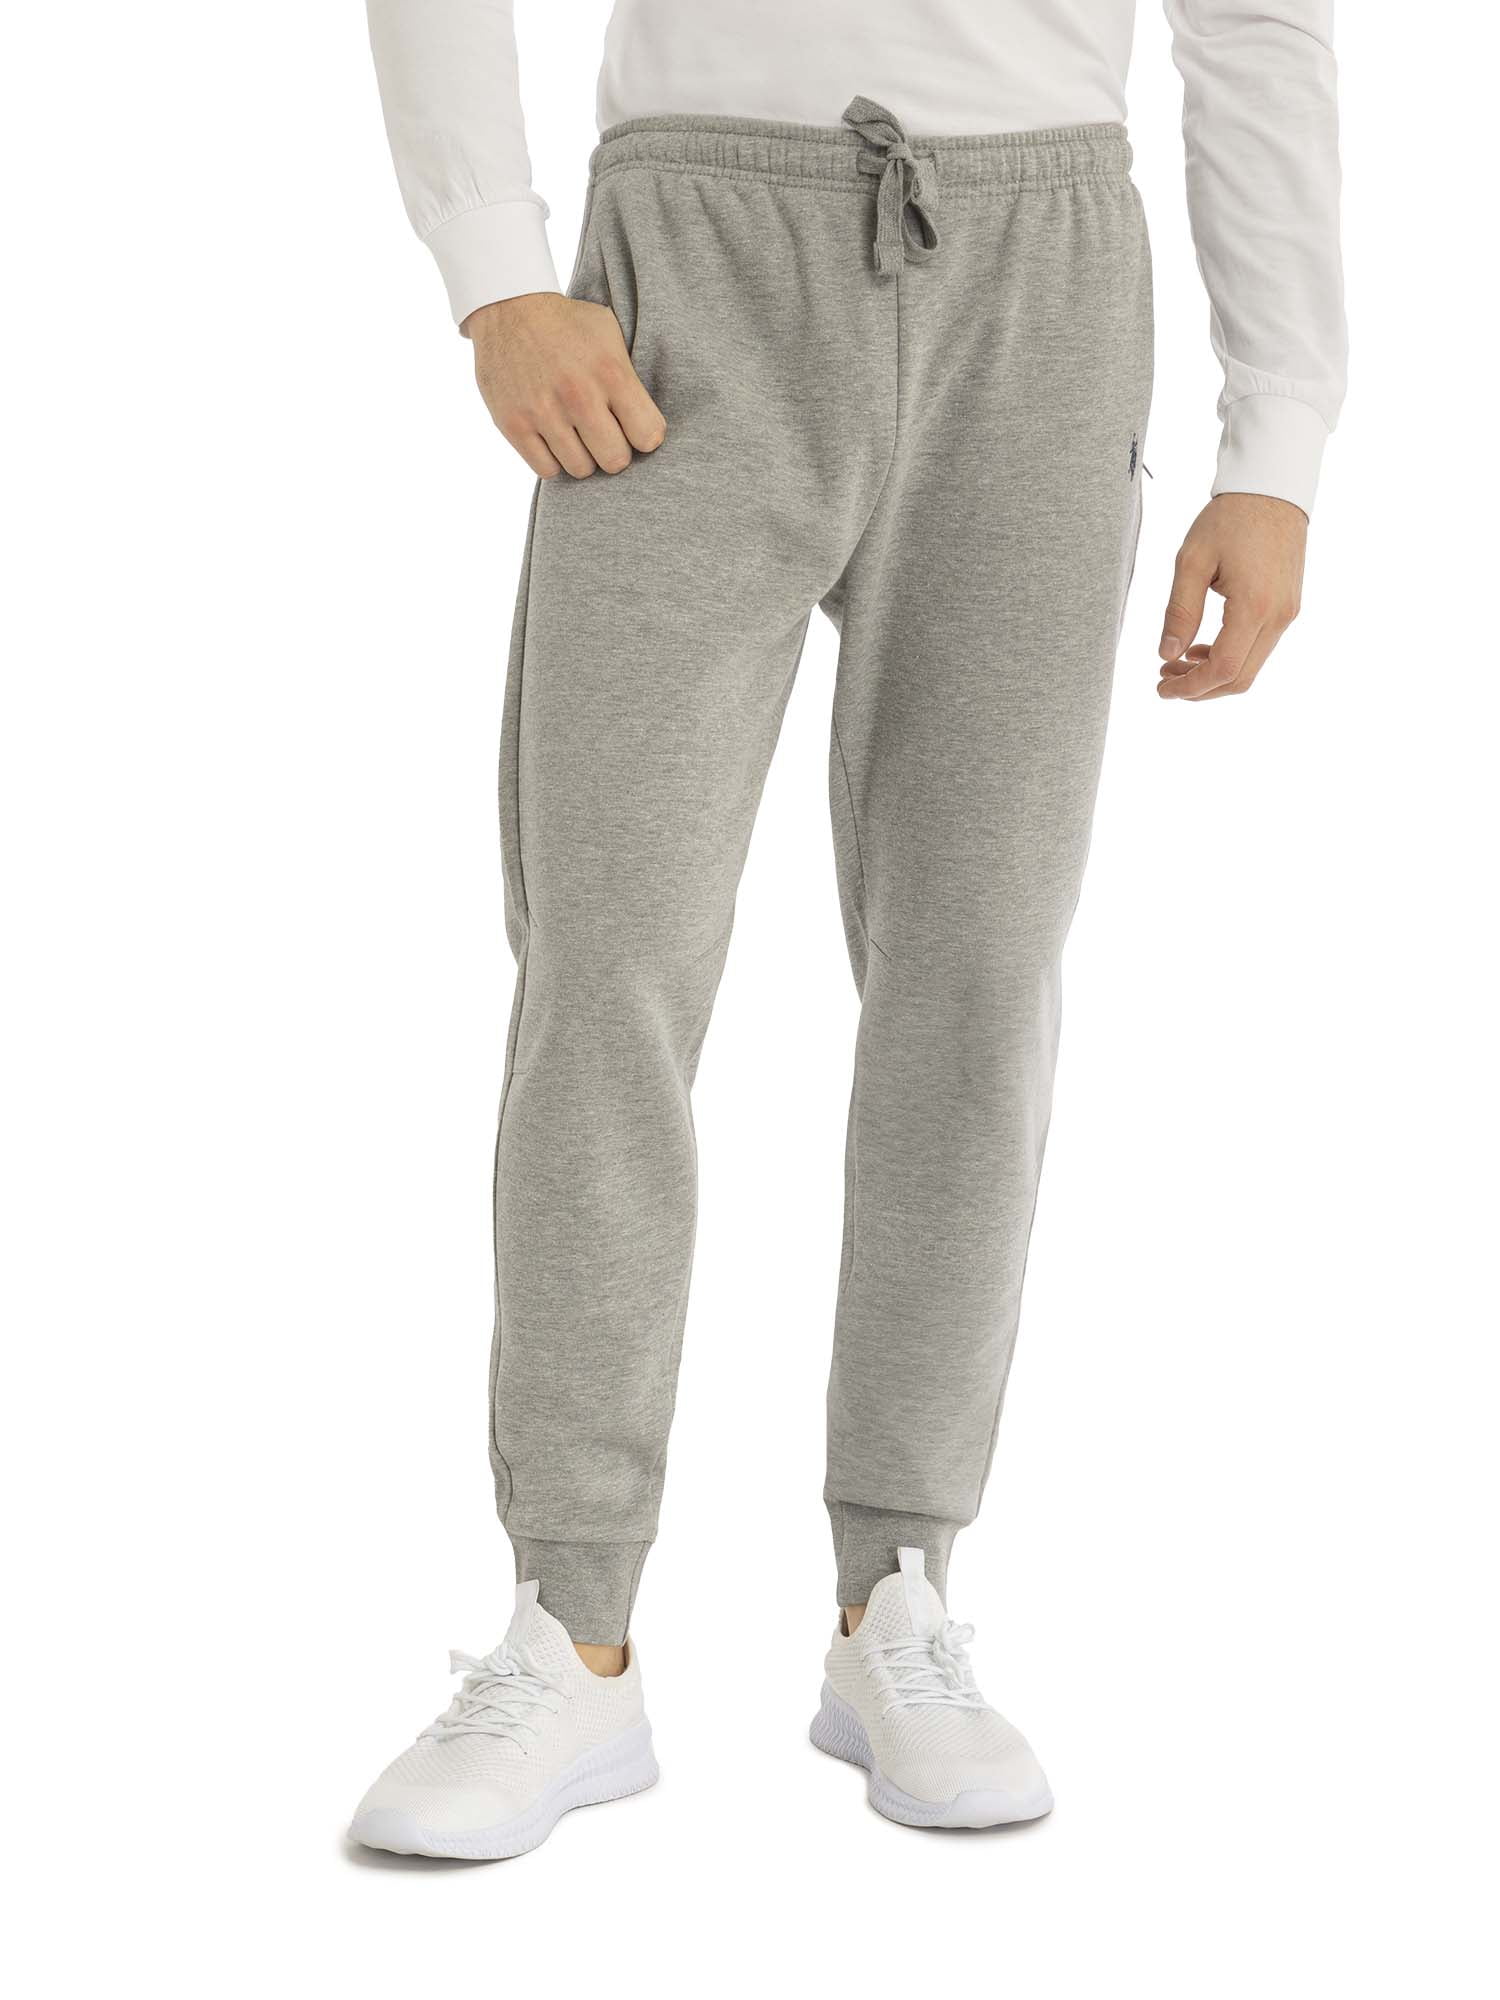 Nike Sweatpants & Joggers for Men - Poshmark